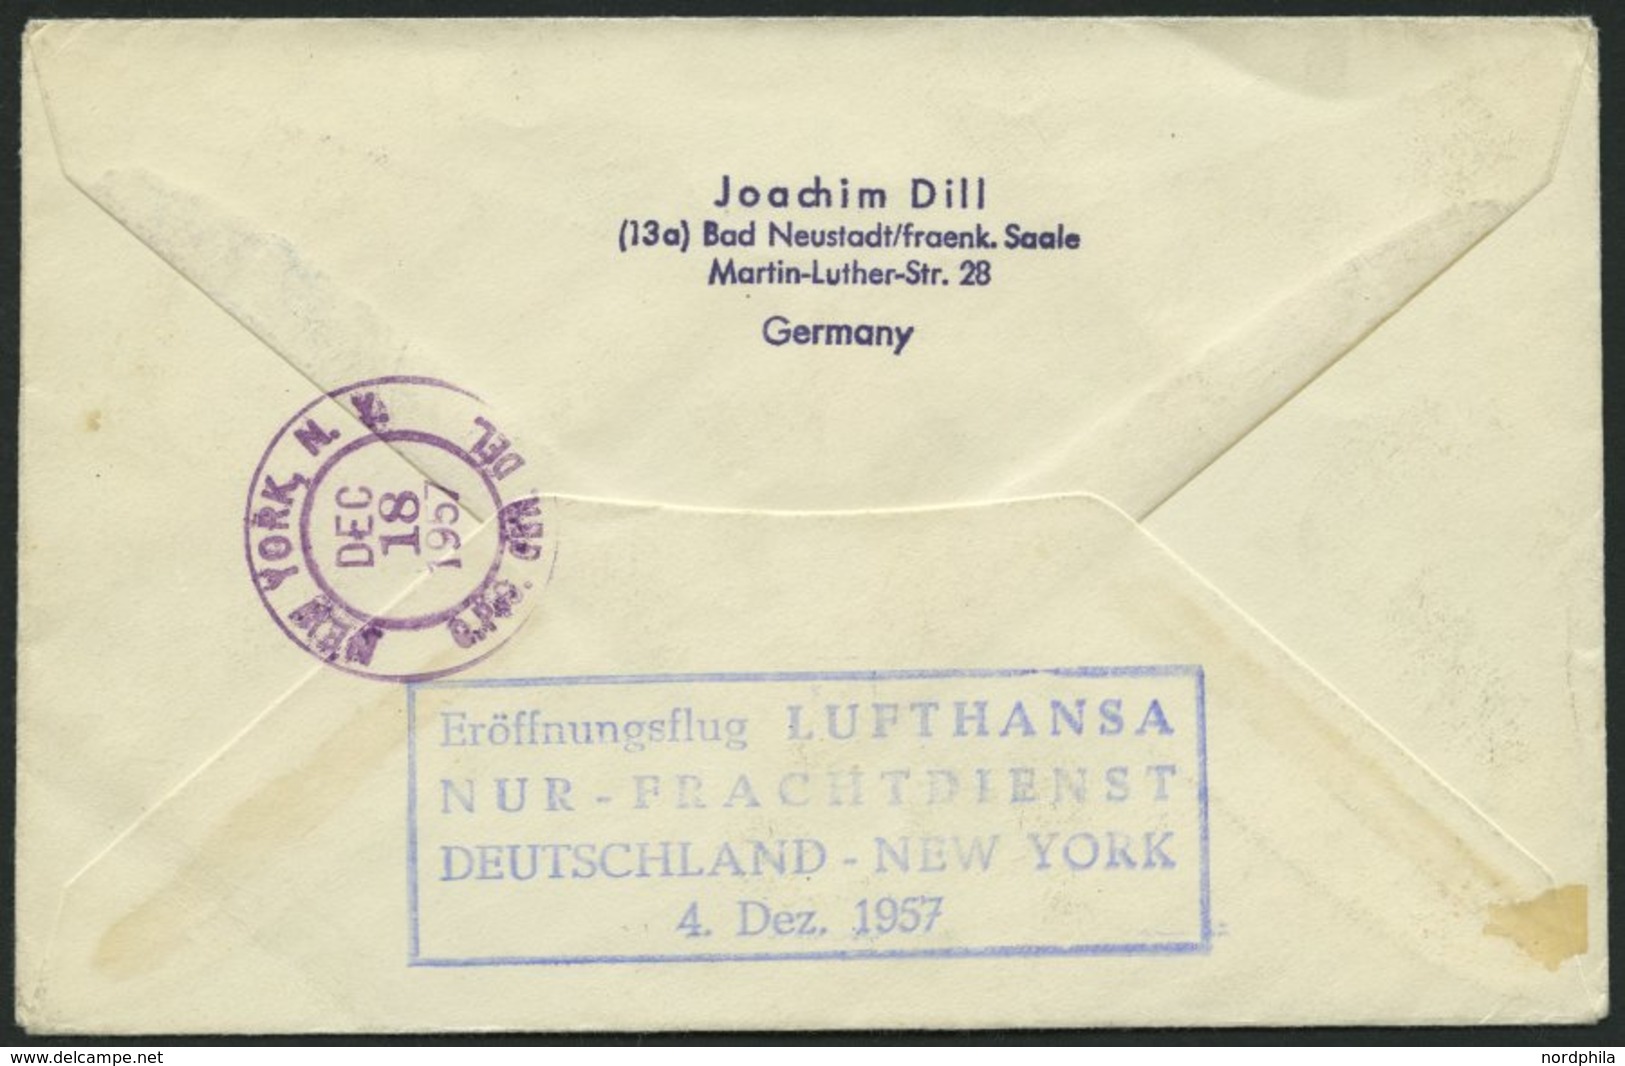 DEUTSCHE LUFTHANSA Brief , 4.12.1957, Deutschland-New York, Nur Frachtdienst, Prachtbrief - Usati